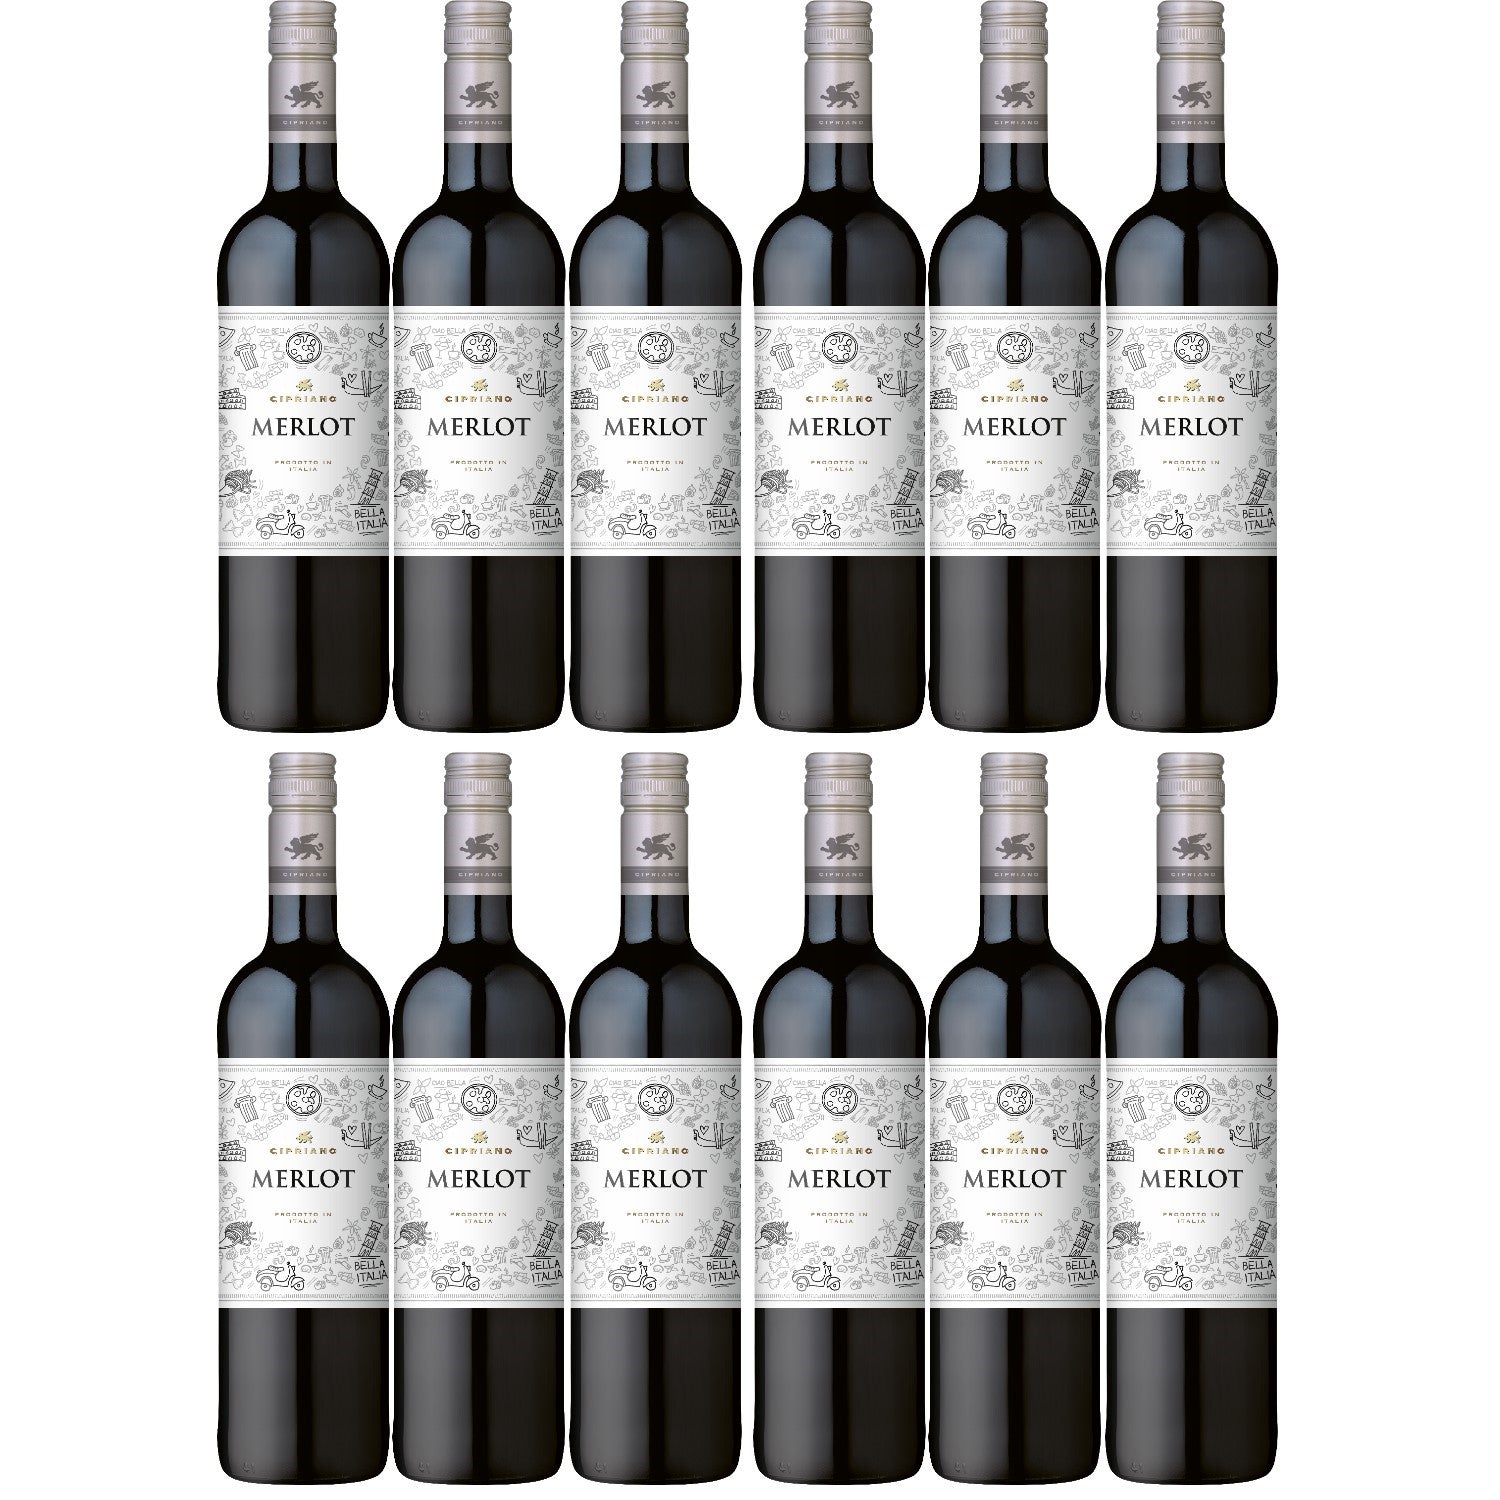 Cipriano Merlot Veneto Rotwein italienischer Wein trocken IGT Italien (12 x 0.75l) - Versanel -